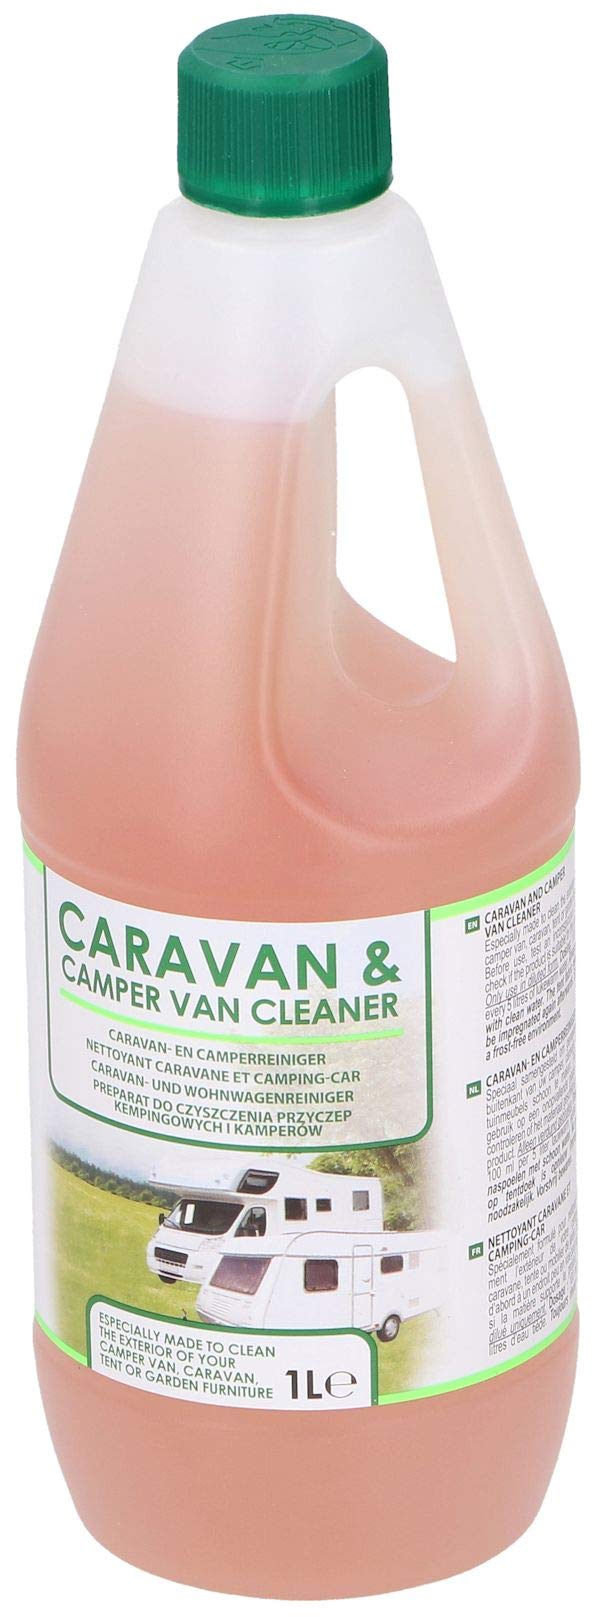 Edco Caravan Cleaner 1 Liter von All Ride